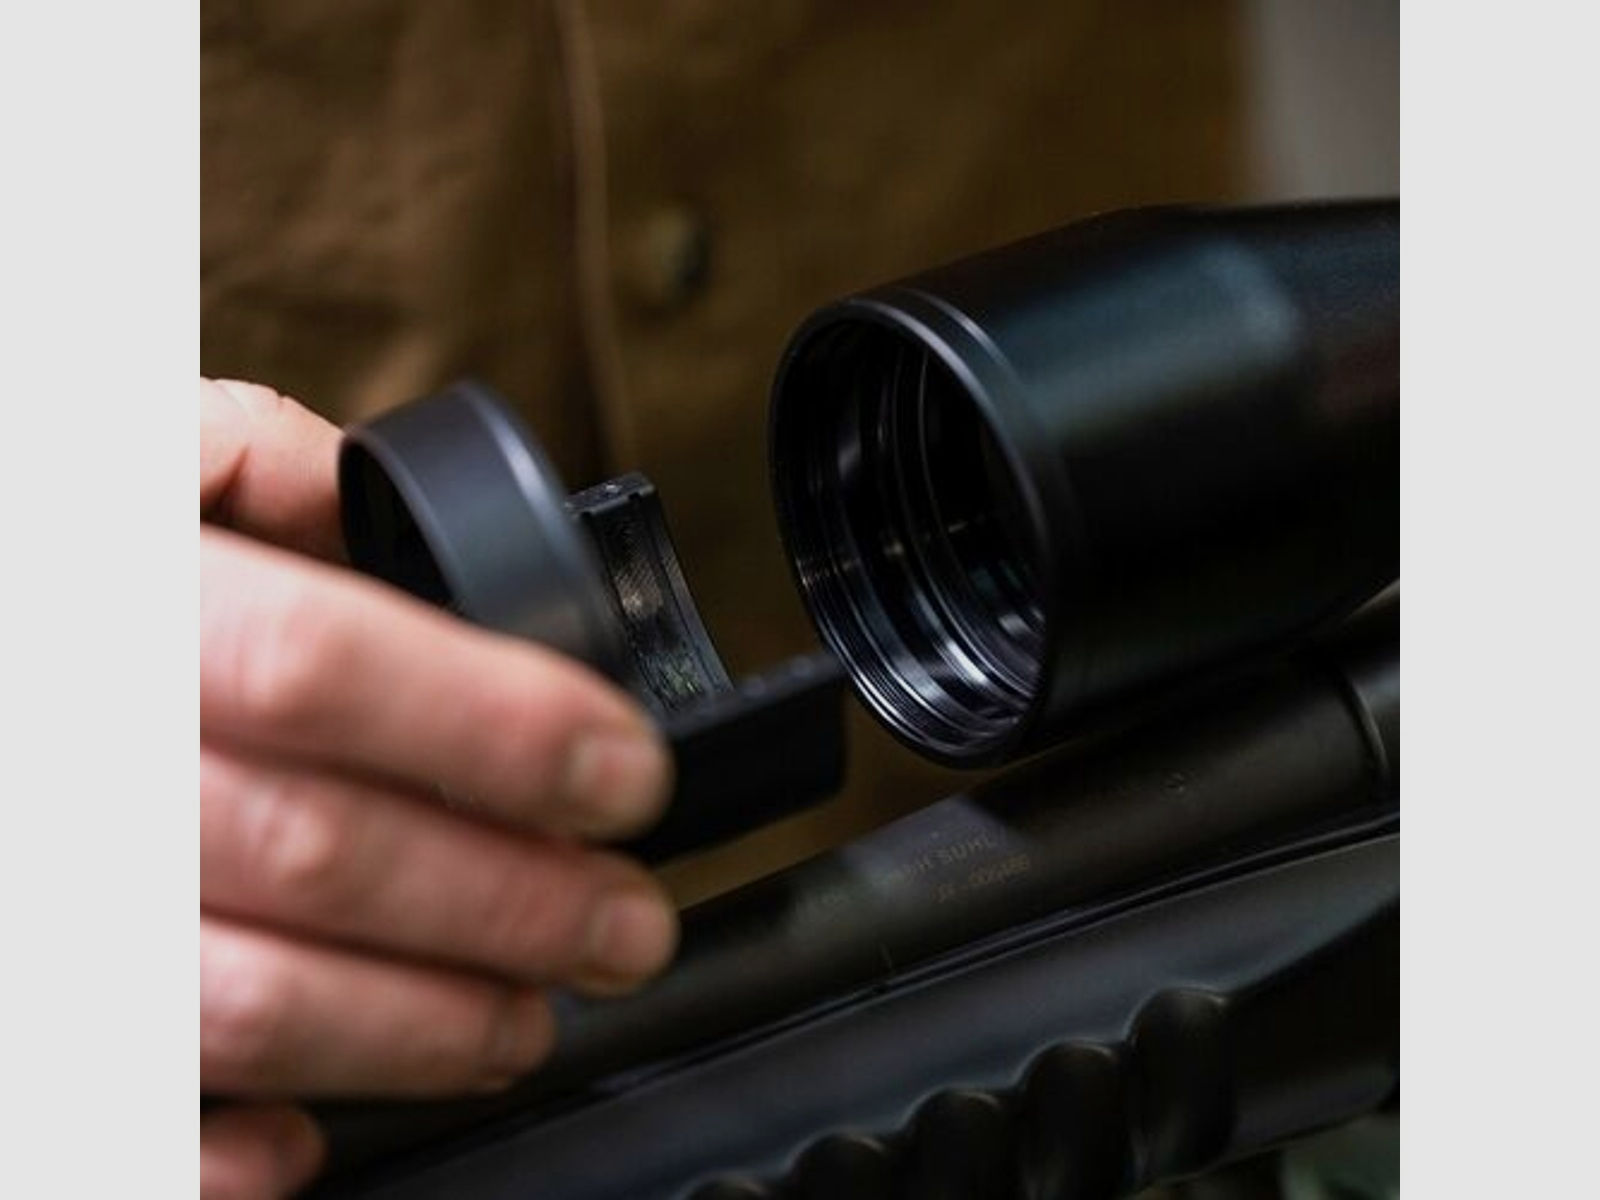 EP Arms	 Zielfernrohrhalter Rotoclip Durchmesser 50 mm